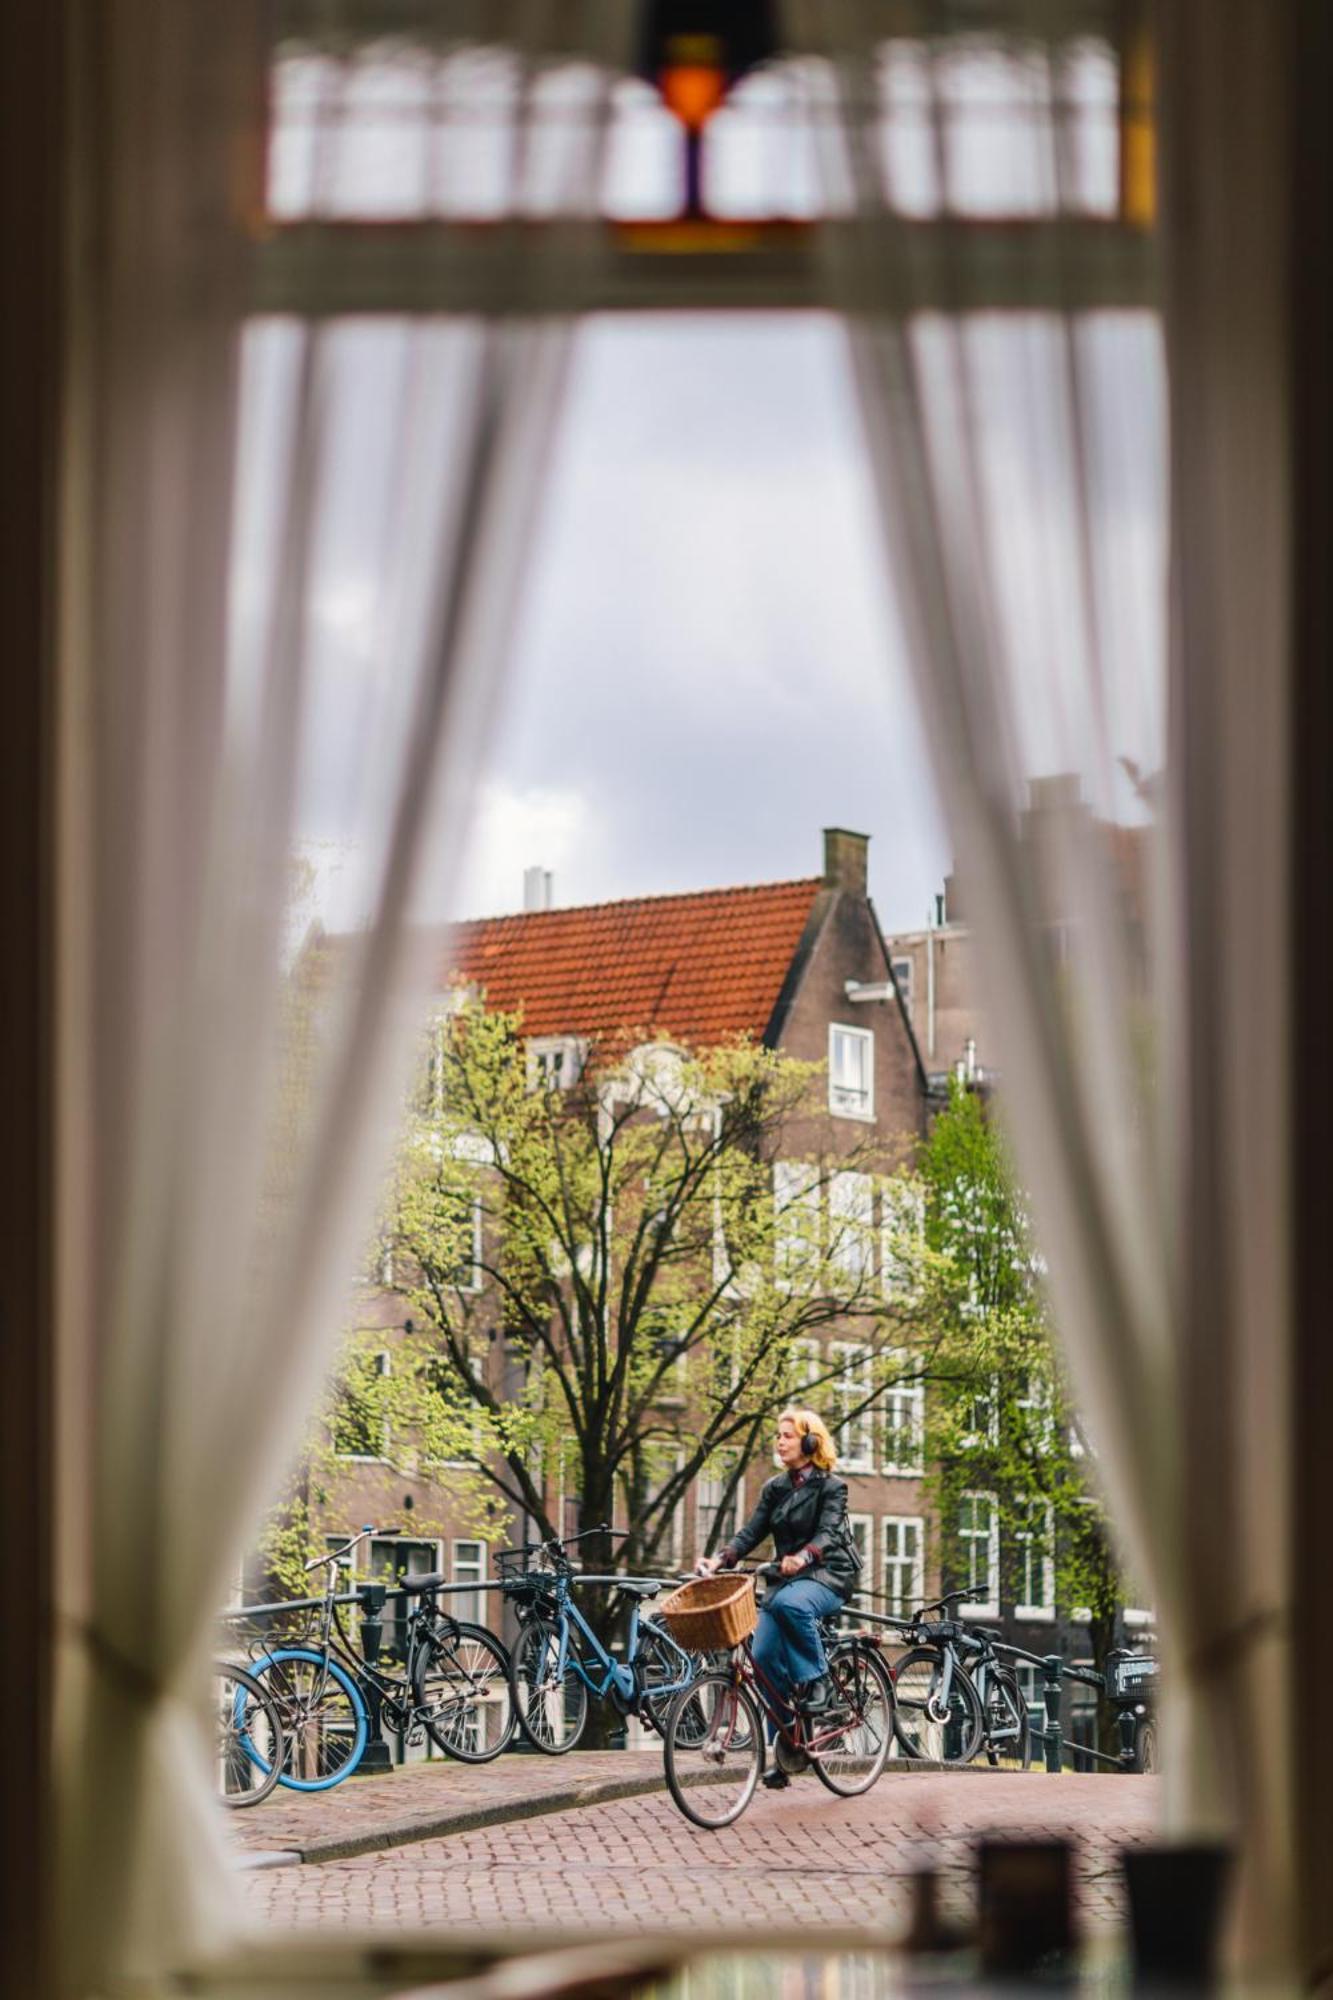 Amsterdam Wiechmann Hotel Eksteriør bilde